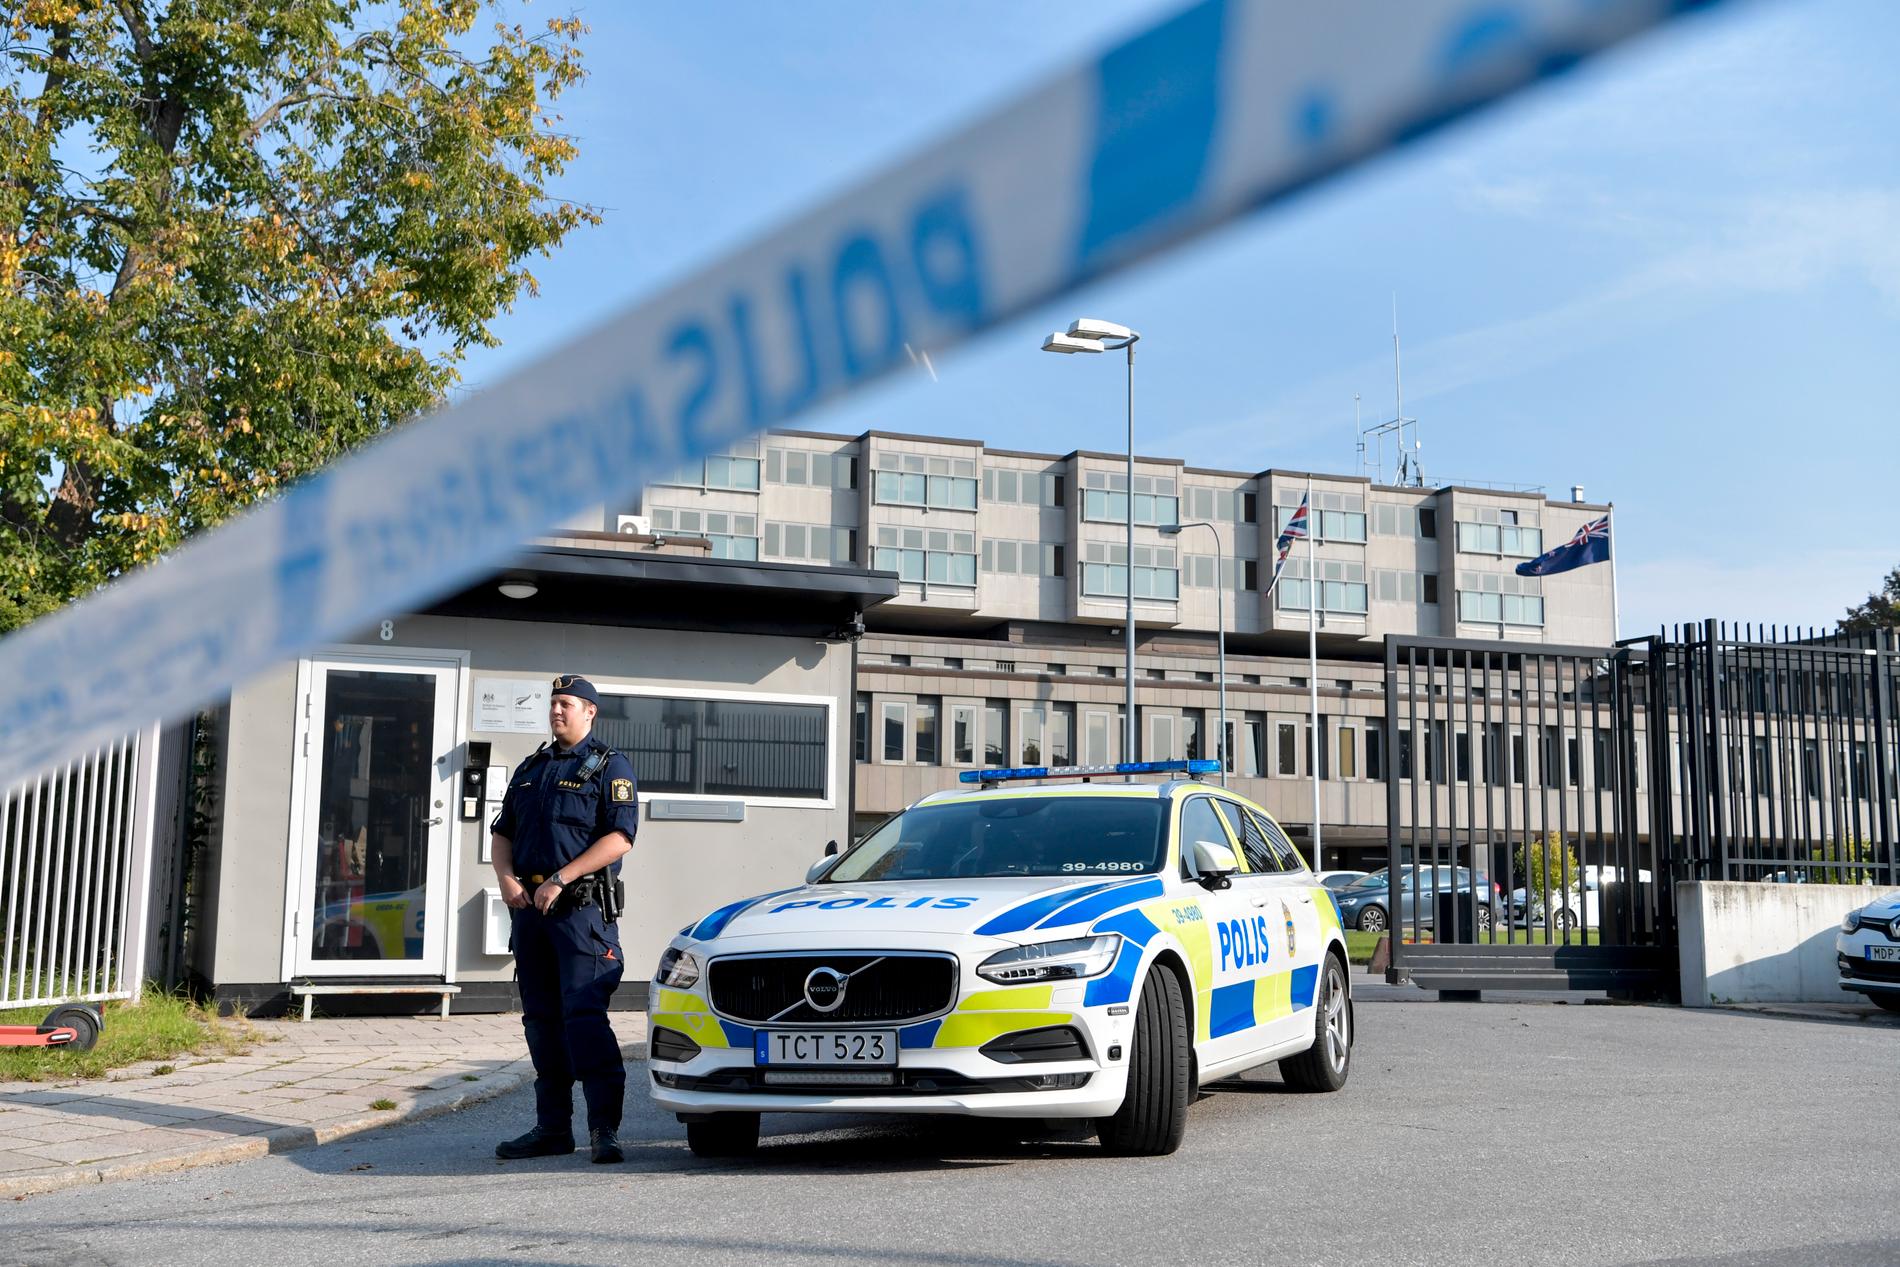 Ett föremål som hittades inne på Storbritanniens ambassad i Stockholm visade sig vara ofarligt, enligt polisen.